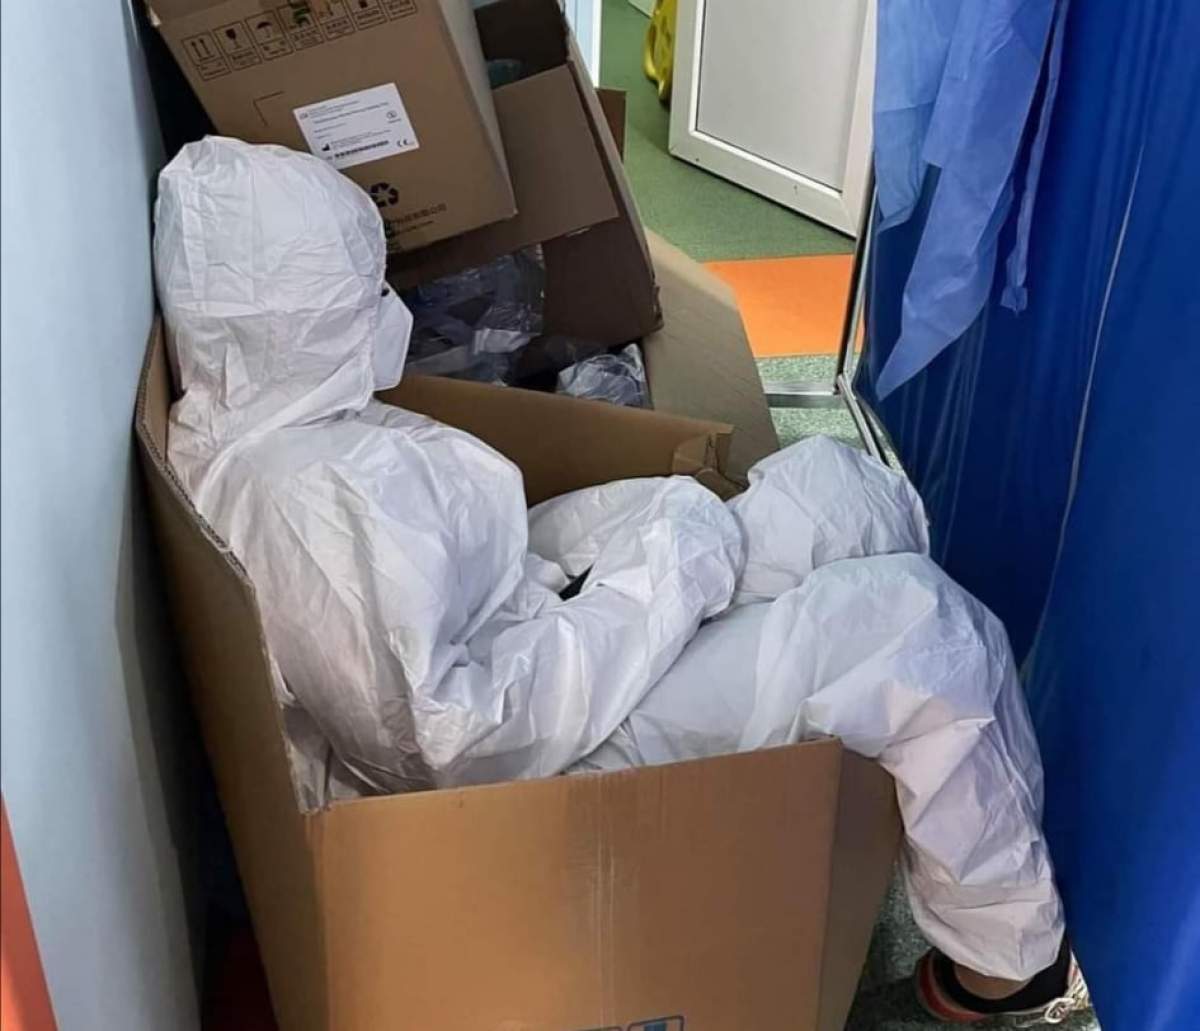 Personalul medical, răpus de oboseală. O asistentă a fost fotografiată în timp ce se odihnea într-o cutie